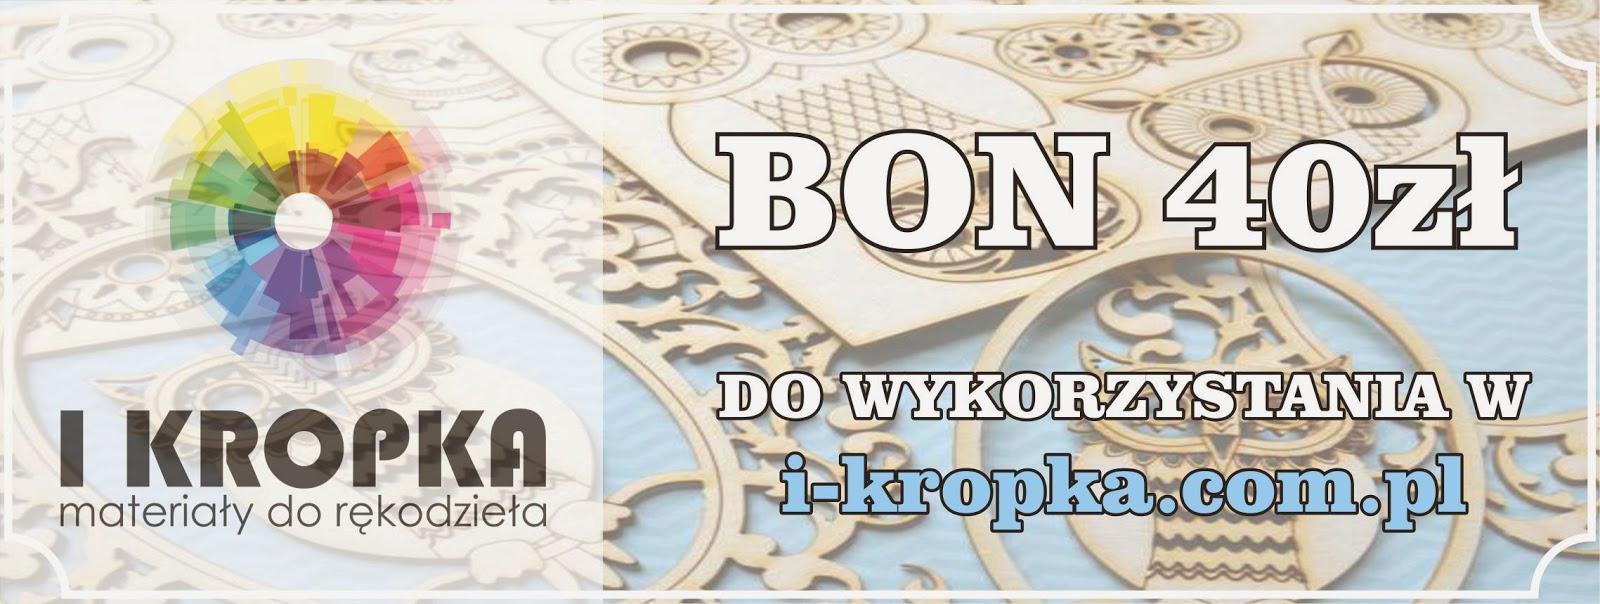 http://i-kropka.com.pl/